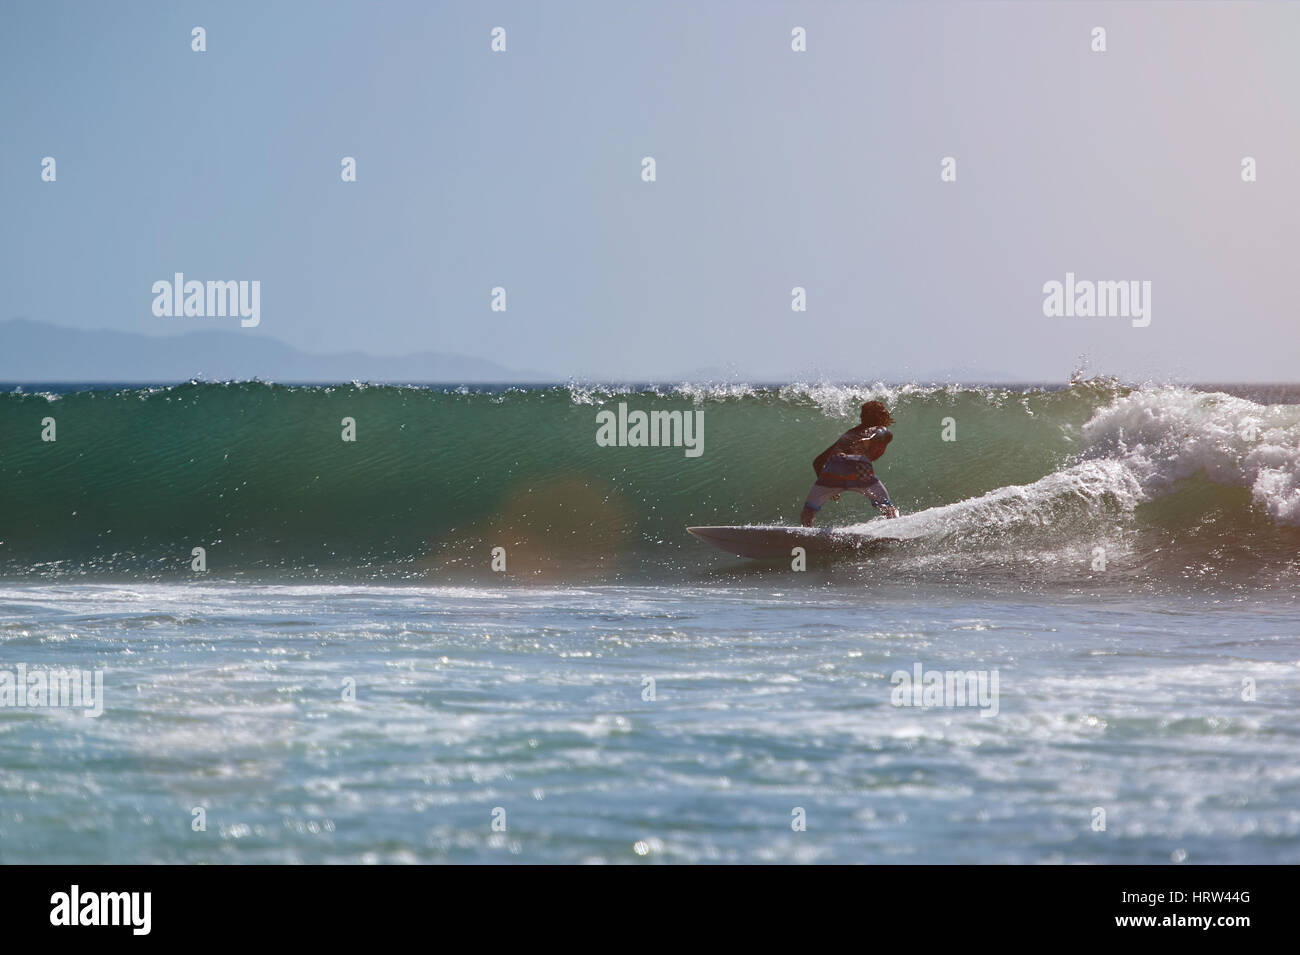 Mann am pazifischen Ozeanwelle an sonnigen Tag surfen. Extremsport-Surf. Ein Surfer auf dem blauen Meer Welle Wasser Stockfoto